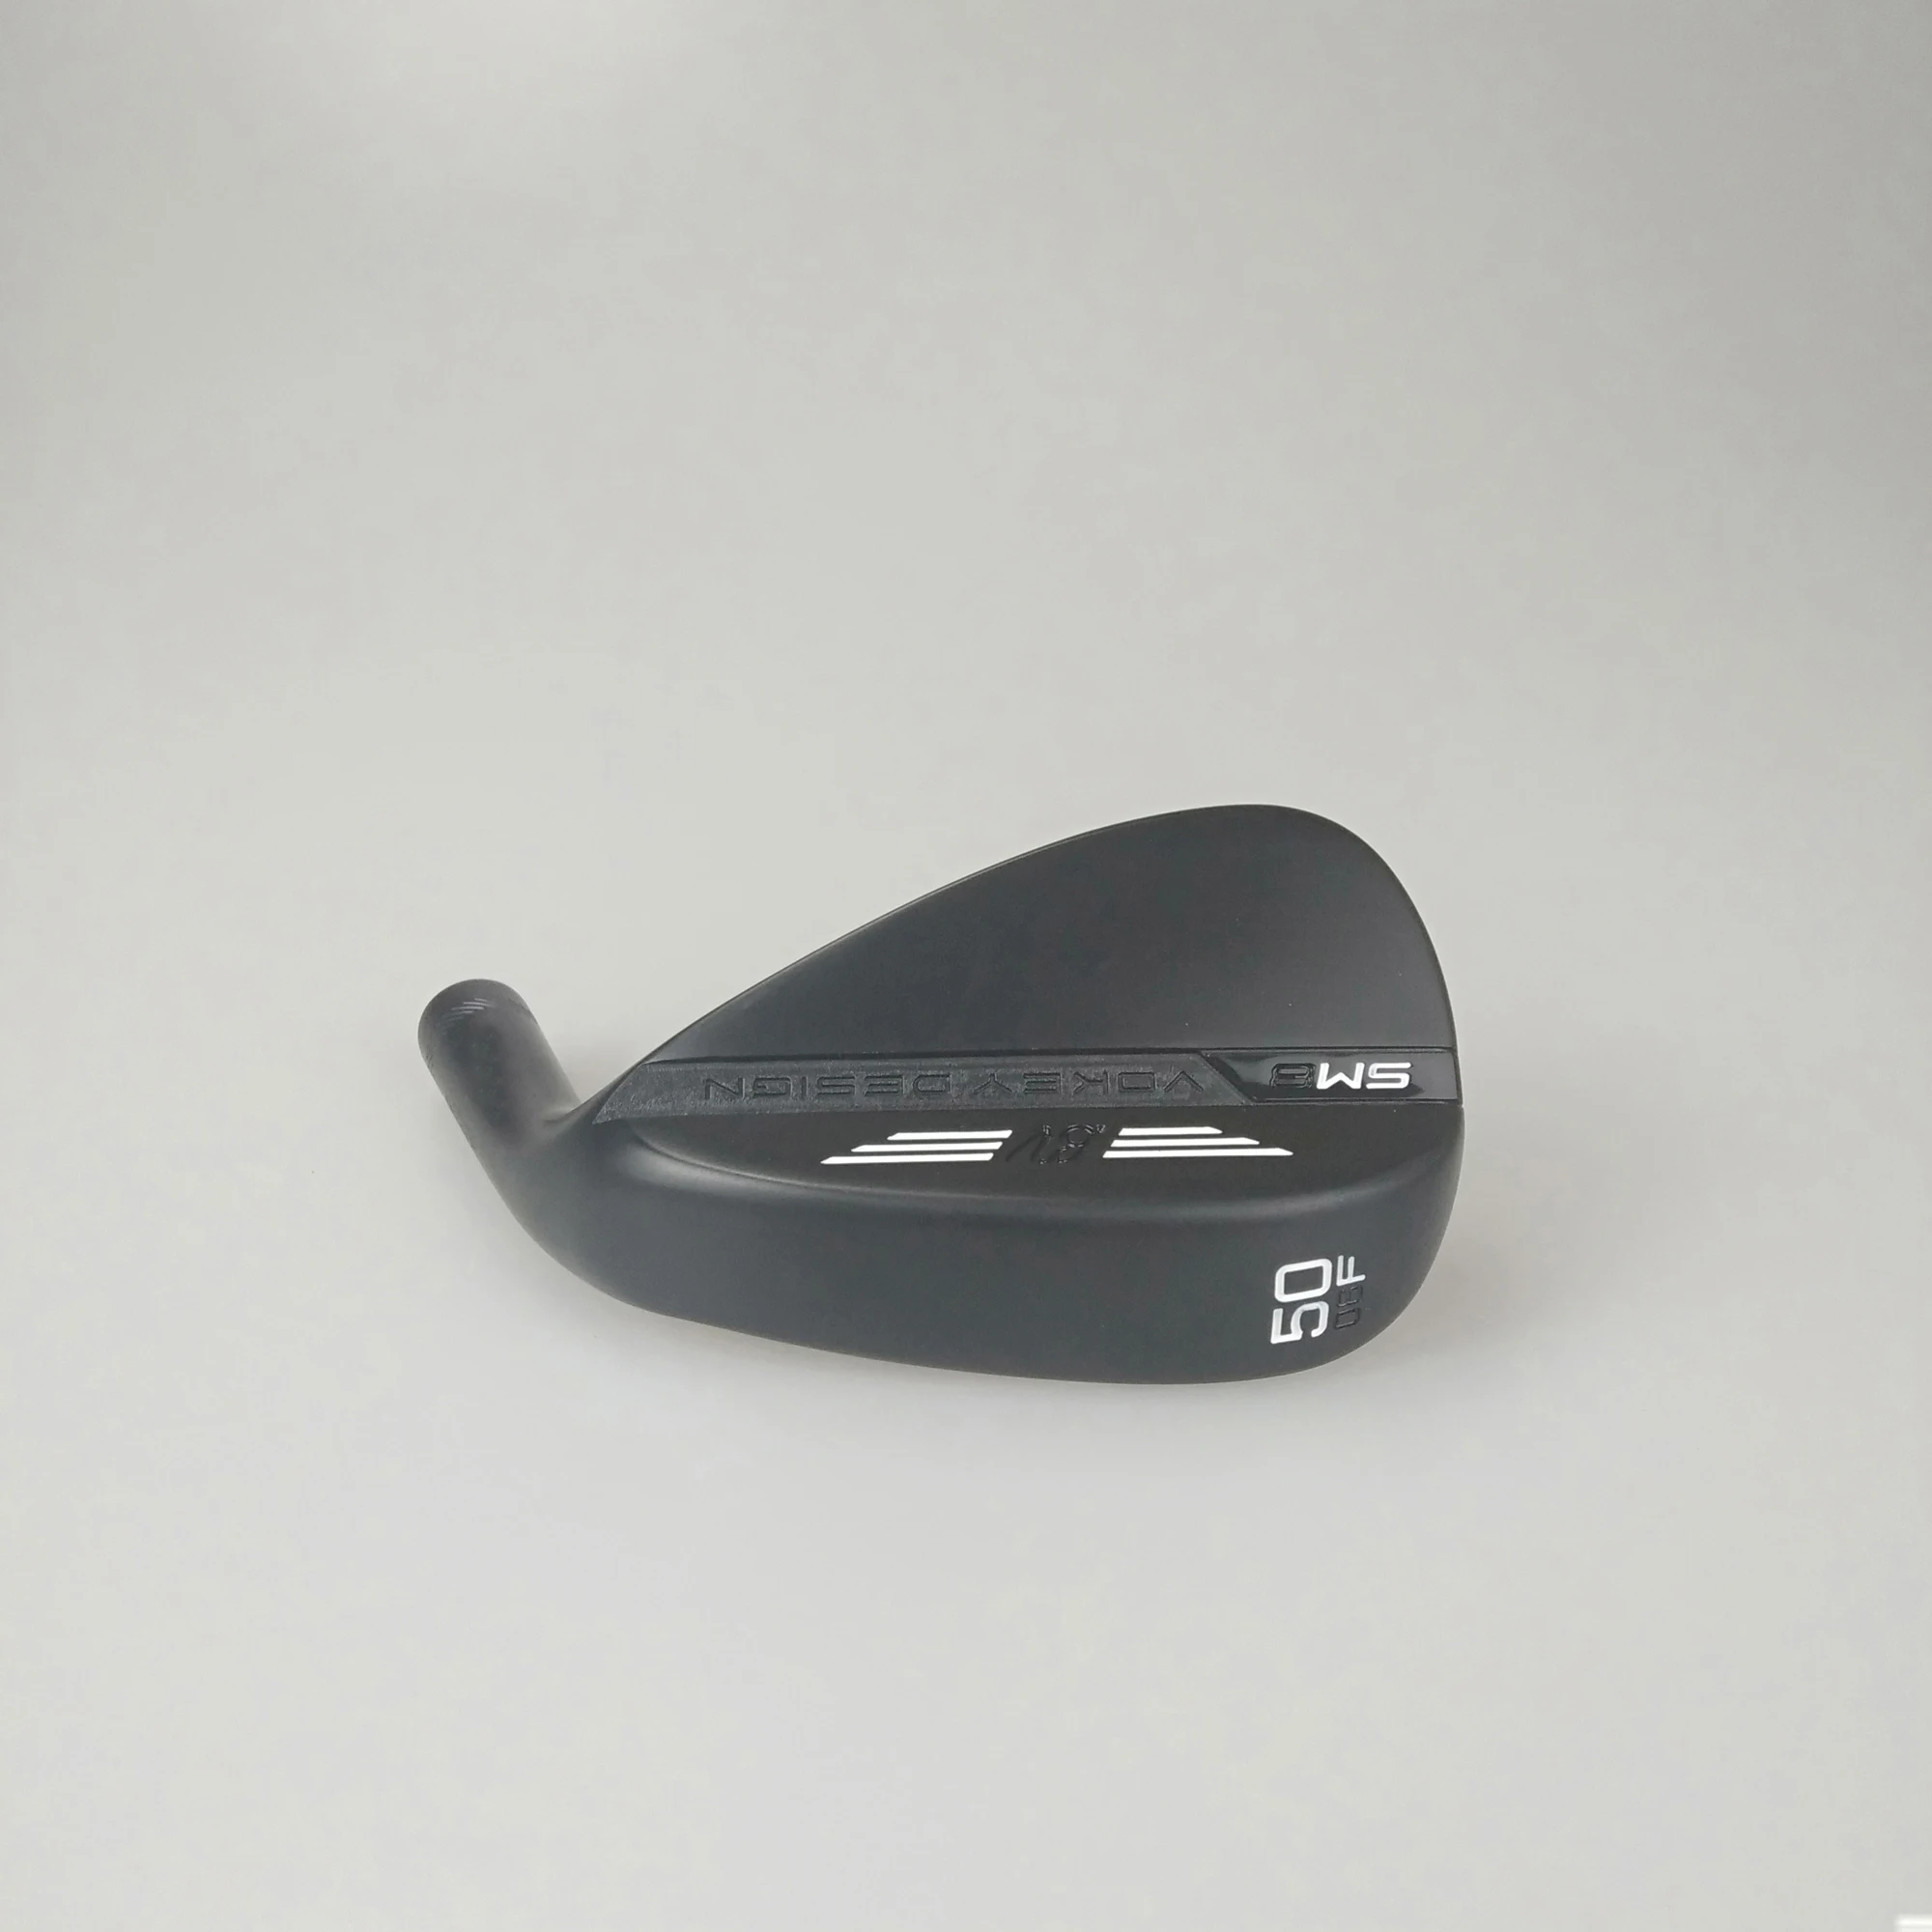 Клюшки для гольфа черные SM-8 клинья 50-60 графитовые валы для гольфа с покрытием для головы Деревянные клюшки